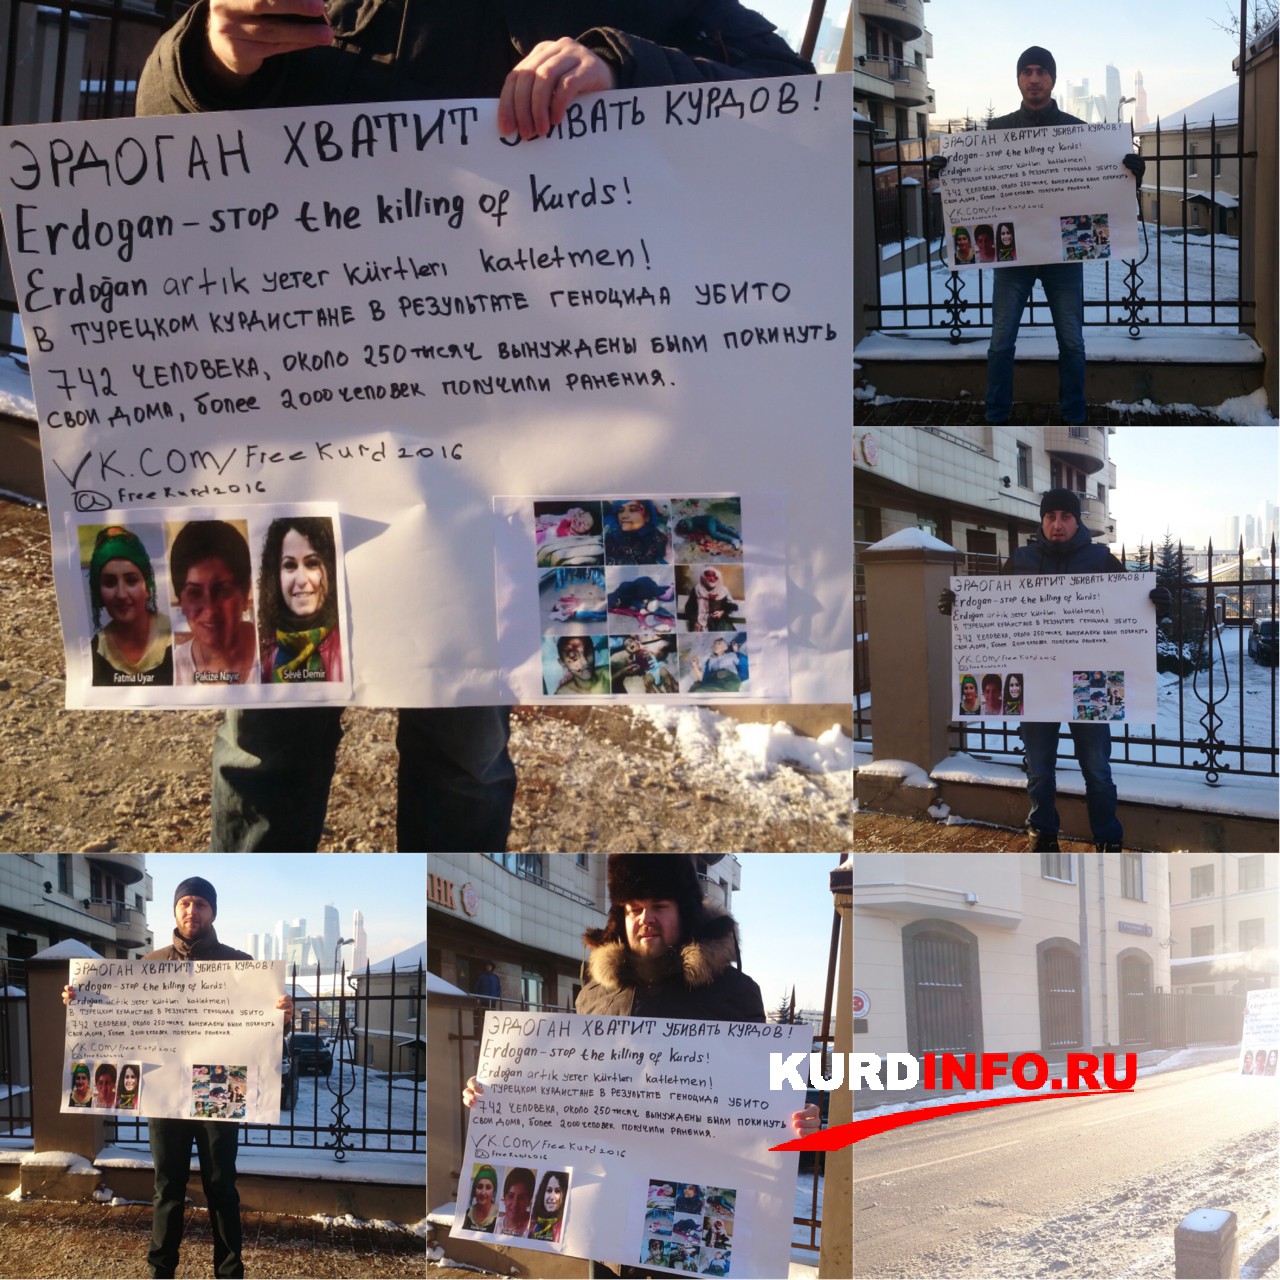 Одиночные пикеты с лозунгом “Эрдоган хватит убивать курдов!” появился у посольства Турции в РФ